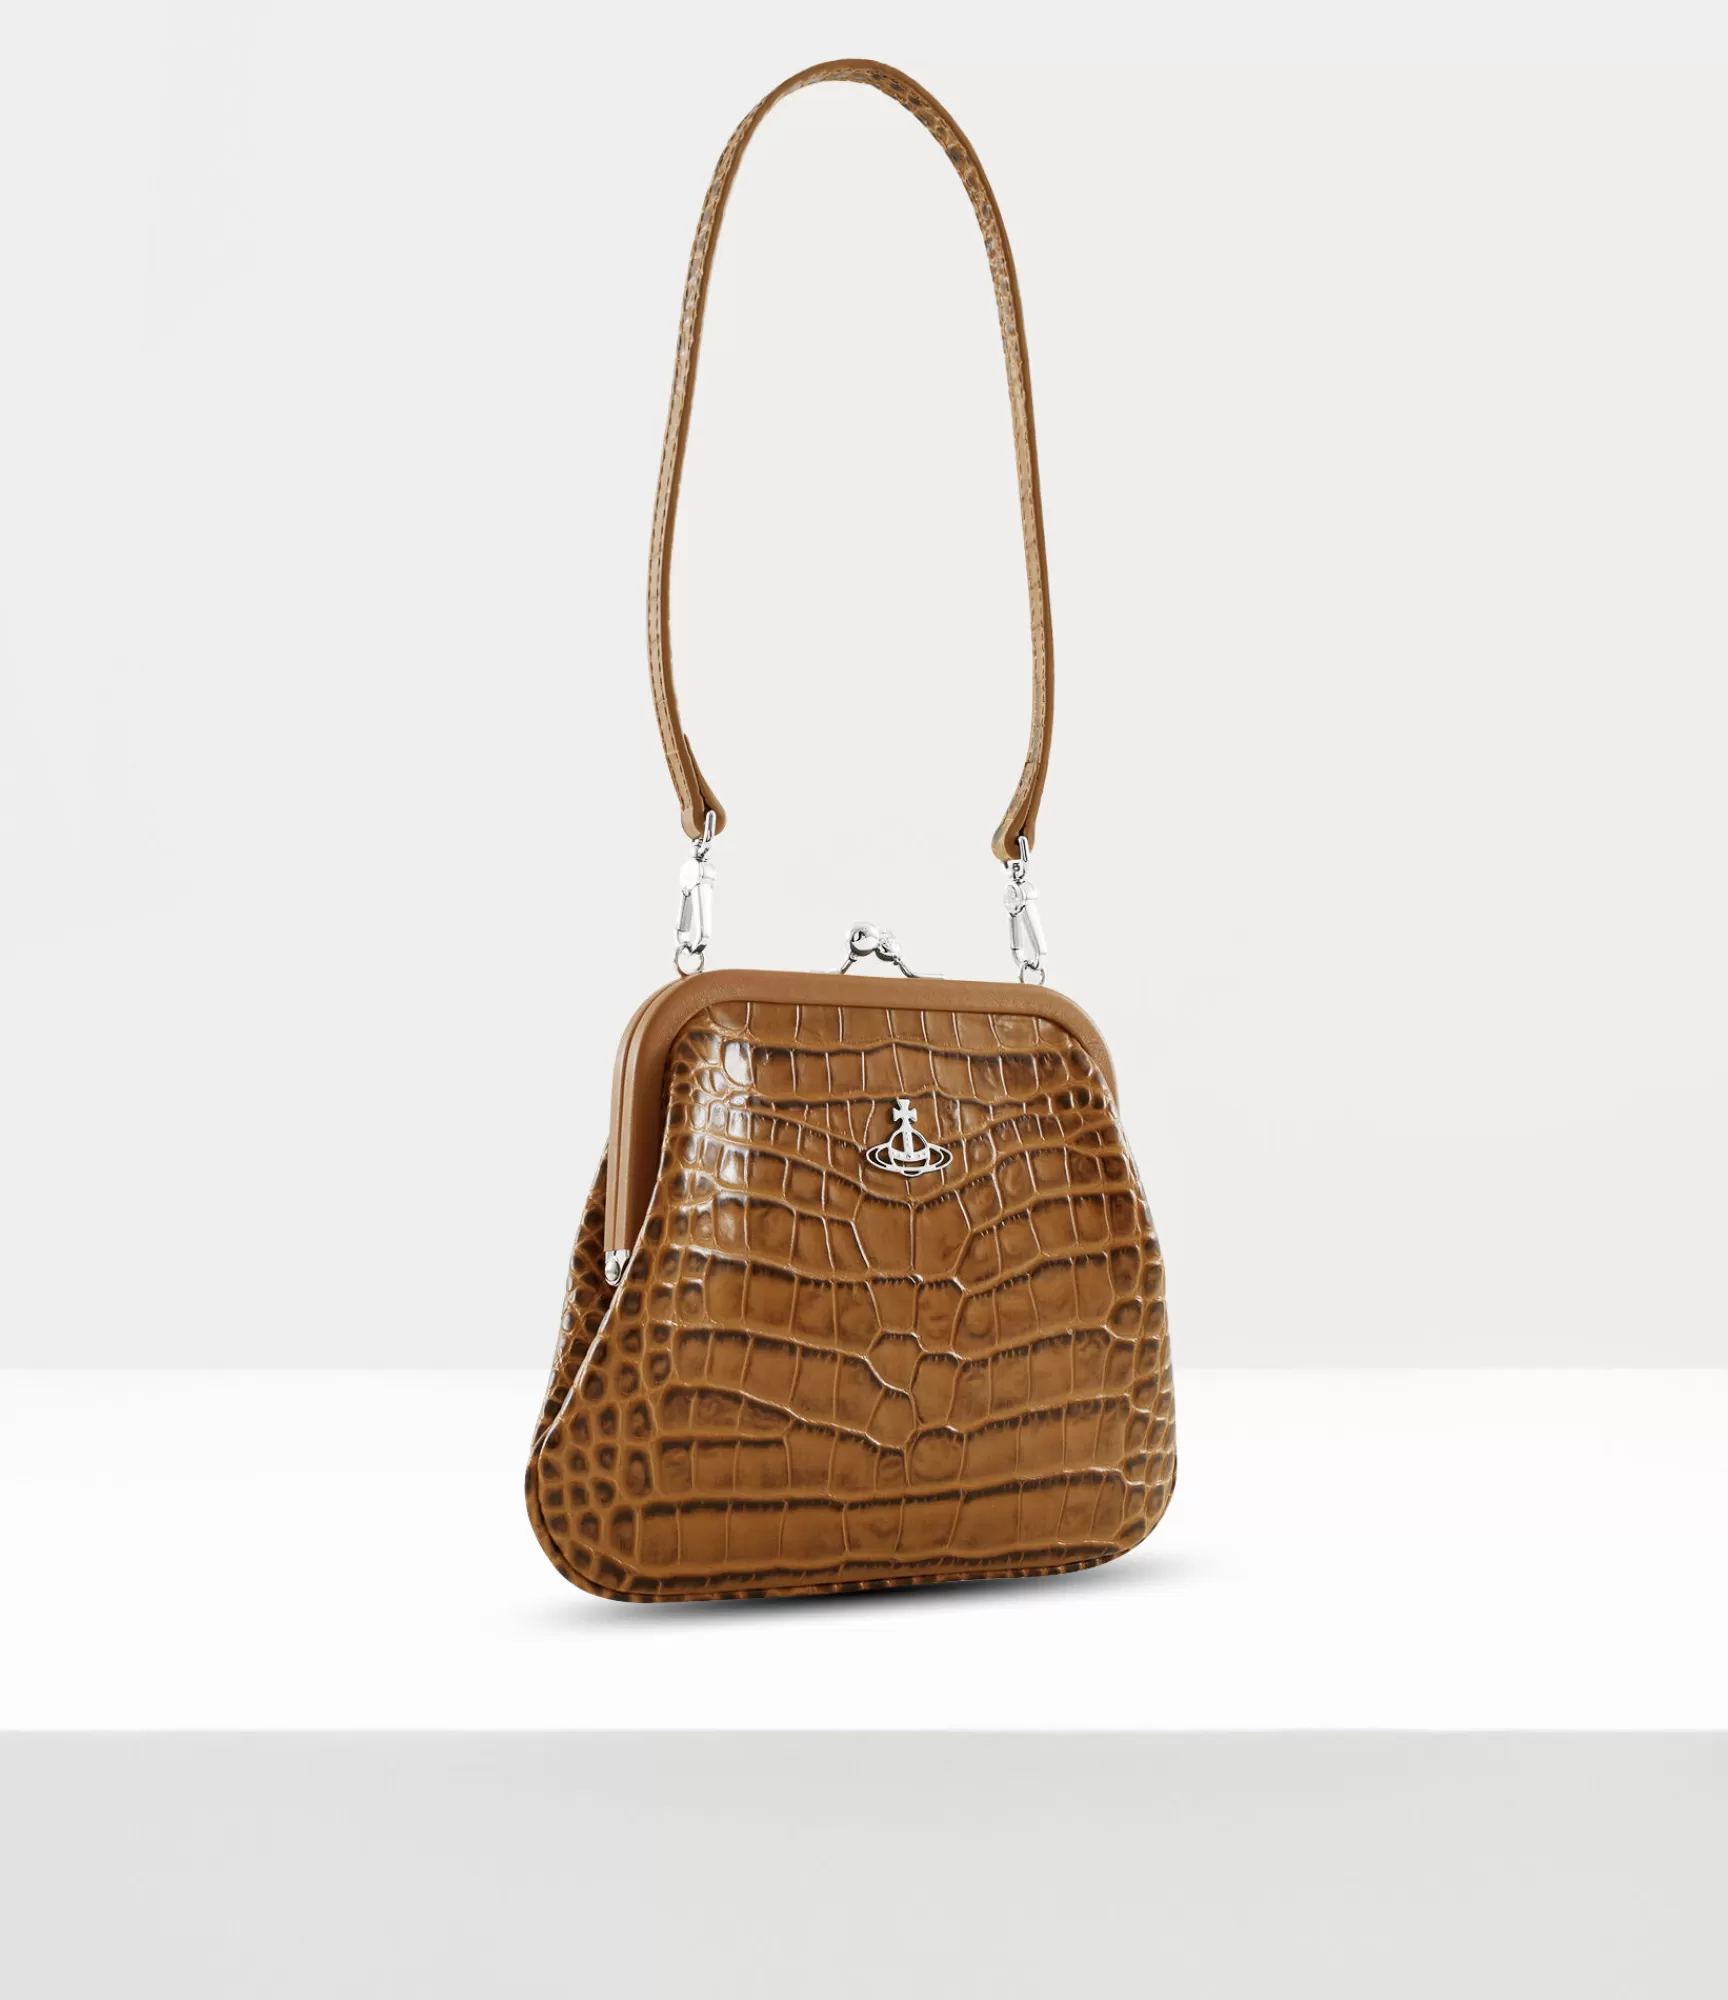 Vivienne Westwood Handbags | Clutches*Vivienne's clutch Tan